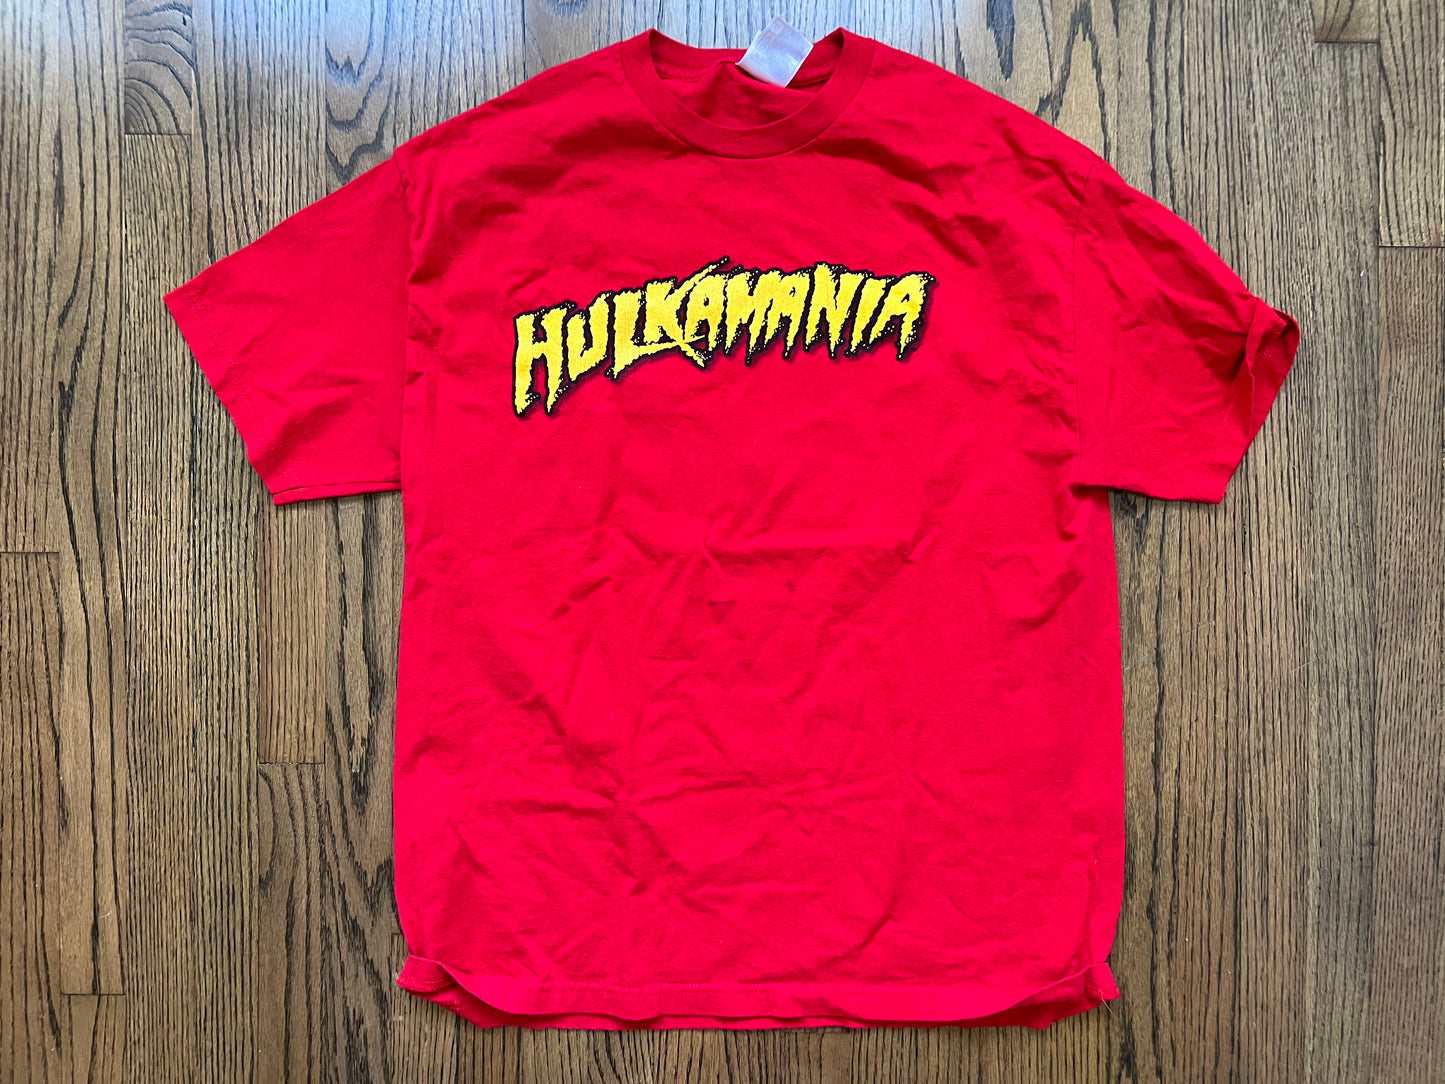 2002 WWE Hulk Hogan shirt